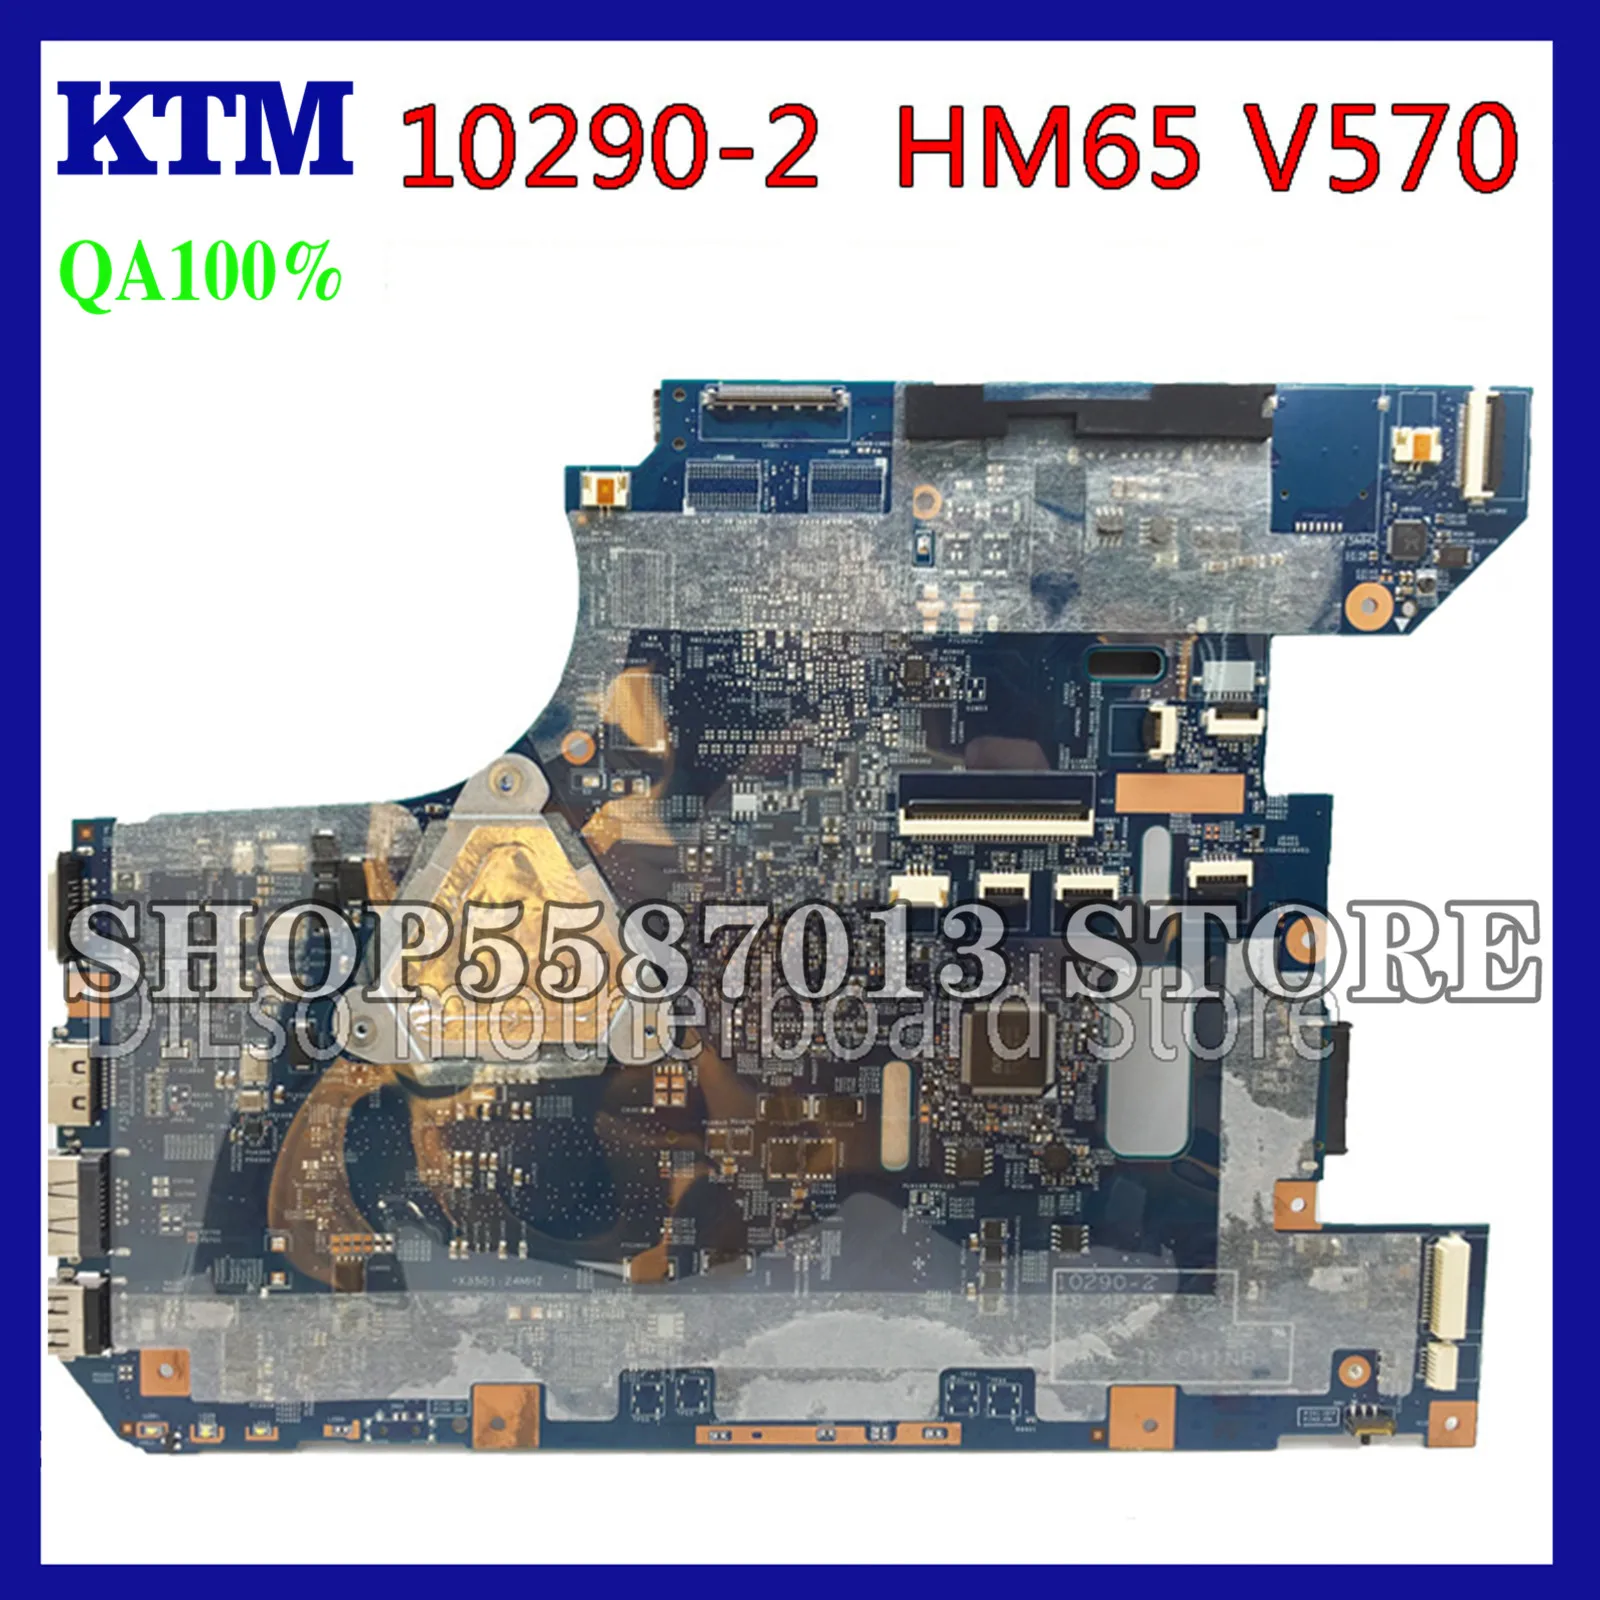 

KEFU 10290-2 48.4PA01.021 LZ57 MB Mainboard For Lenovo V570 V570C Motherboard B570 Z570 Motherboard HM65 PGA989 test 100% work